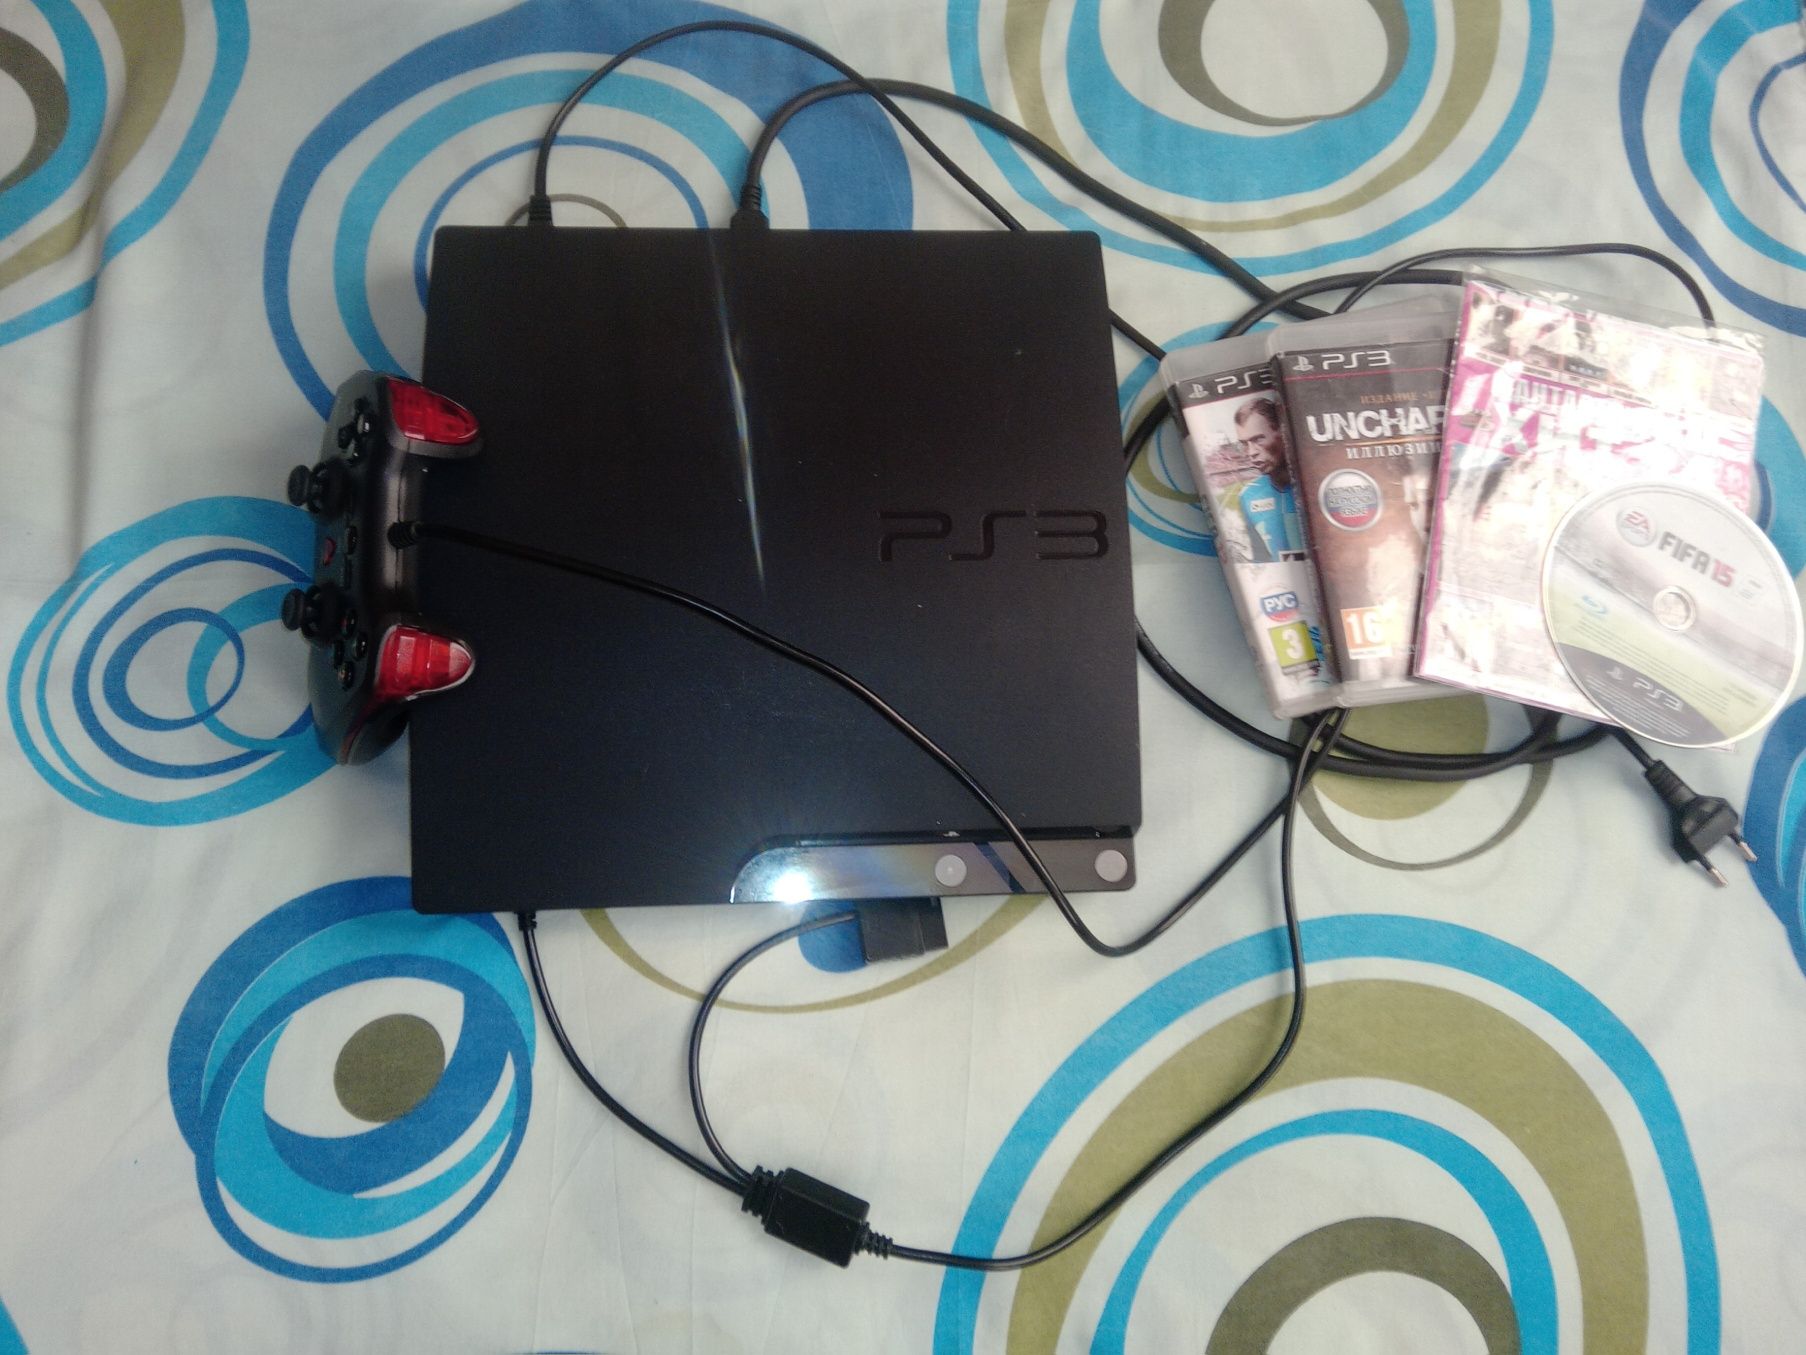 PlayStation 3 прошитая с играми и дисками